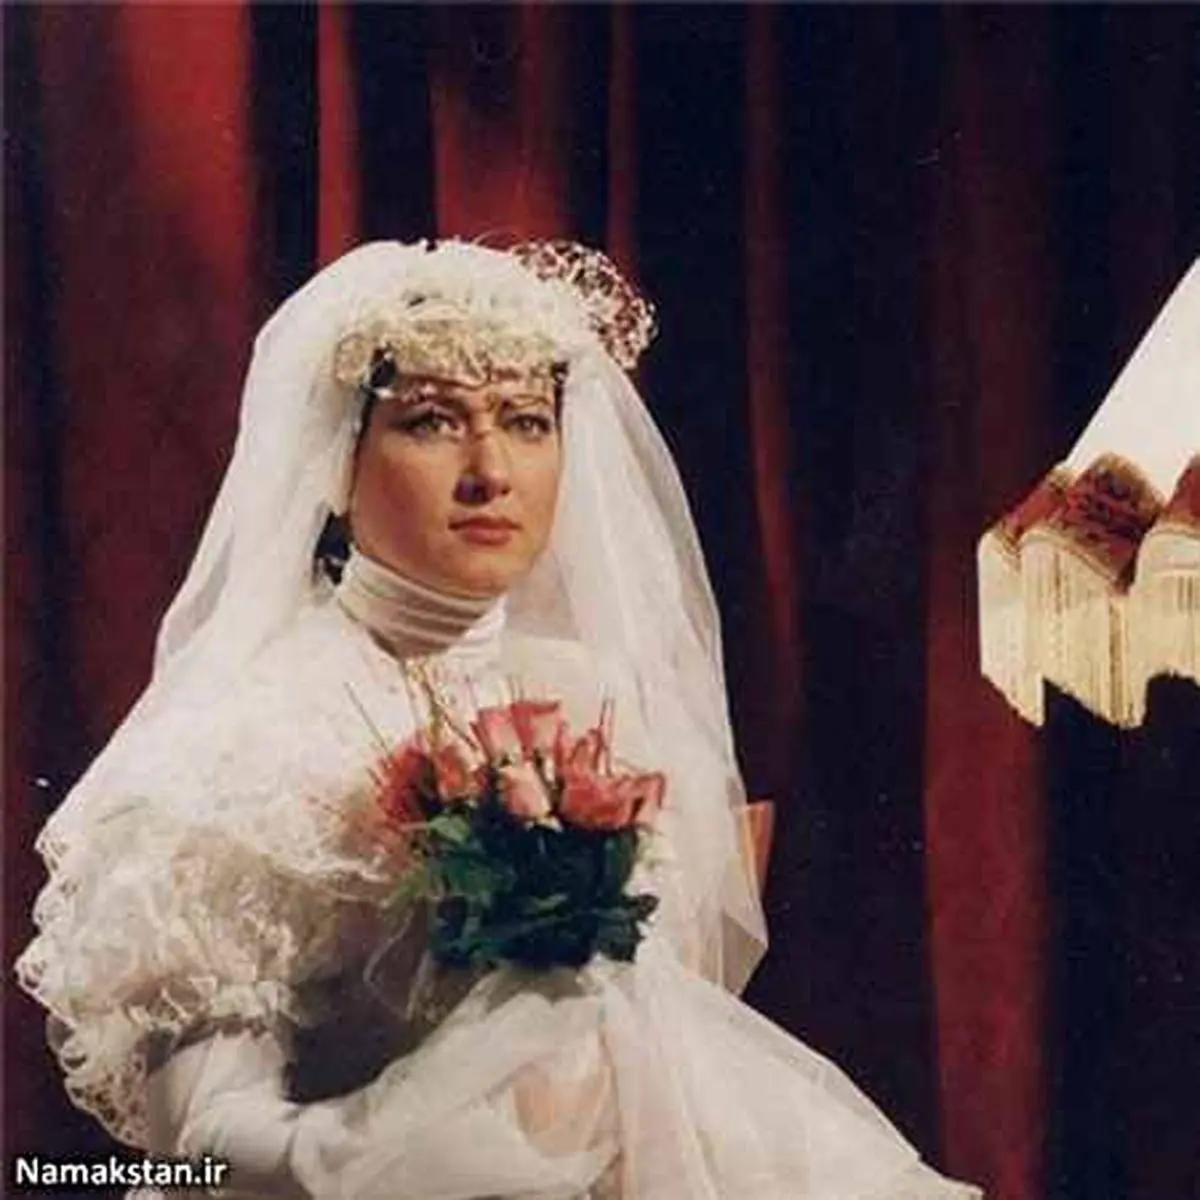 تغییر چهره “خانم بازیگر معروف” در جشن عروسی اش/ عکس